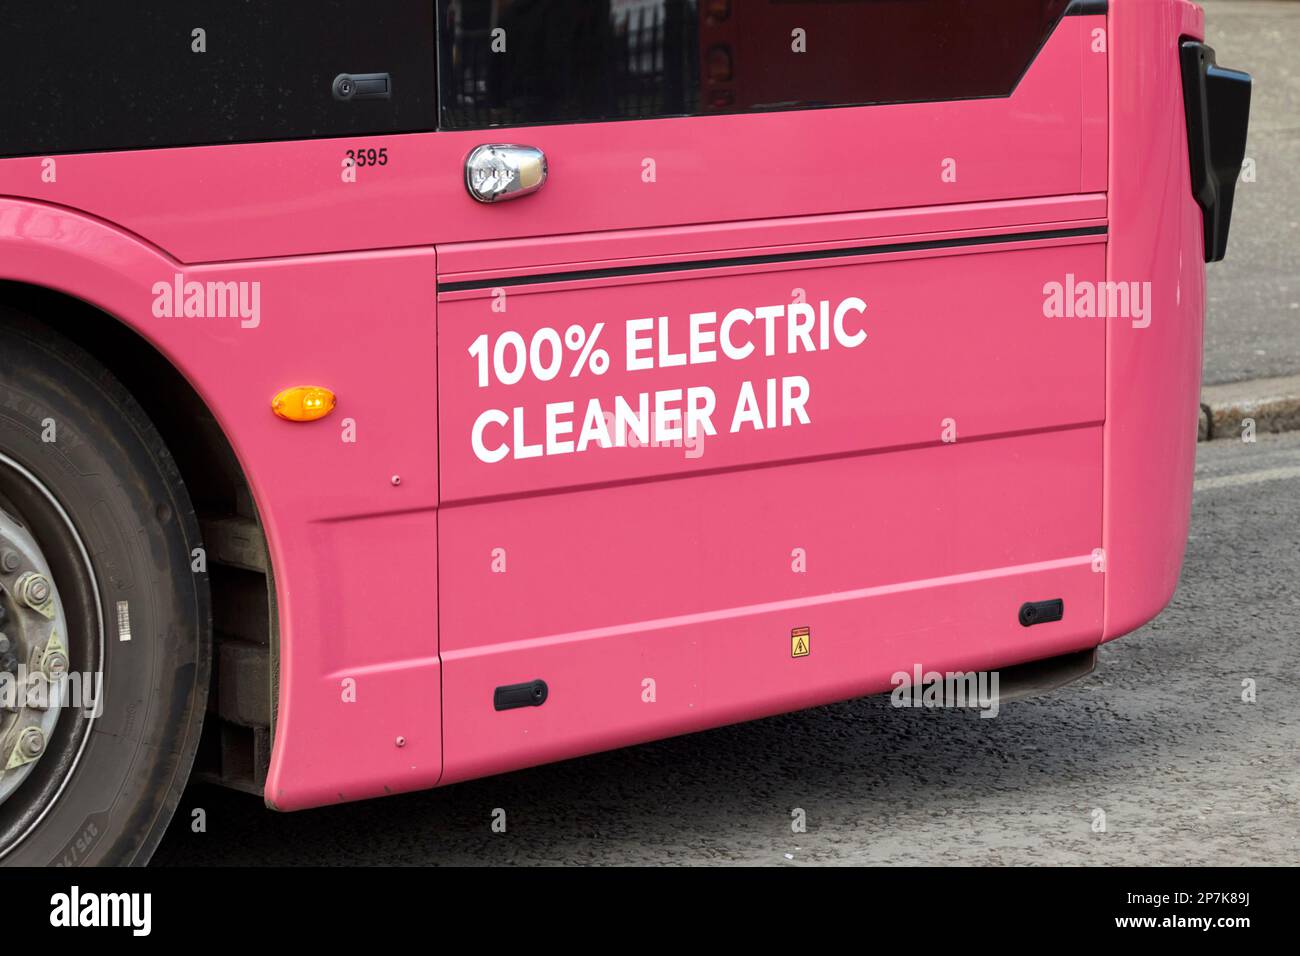 Pink metro translink 100% électrique belfast City bus société de transport public Belfast Irlande du Nord Royaume-Uni Banque D'Images